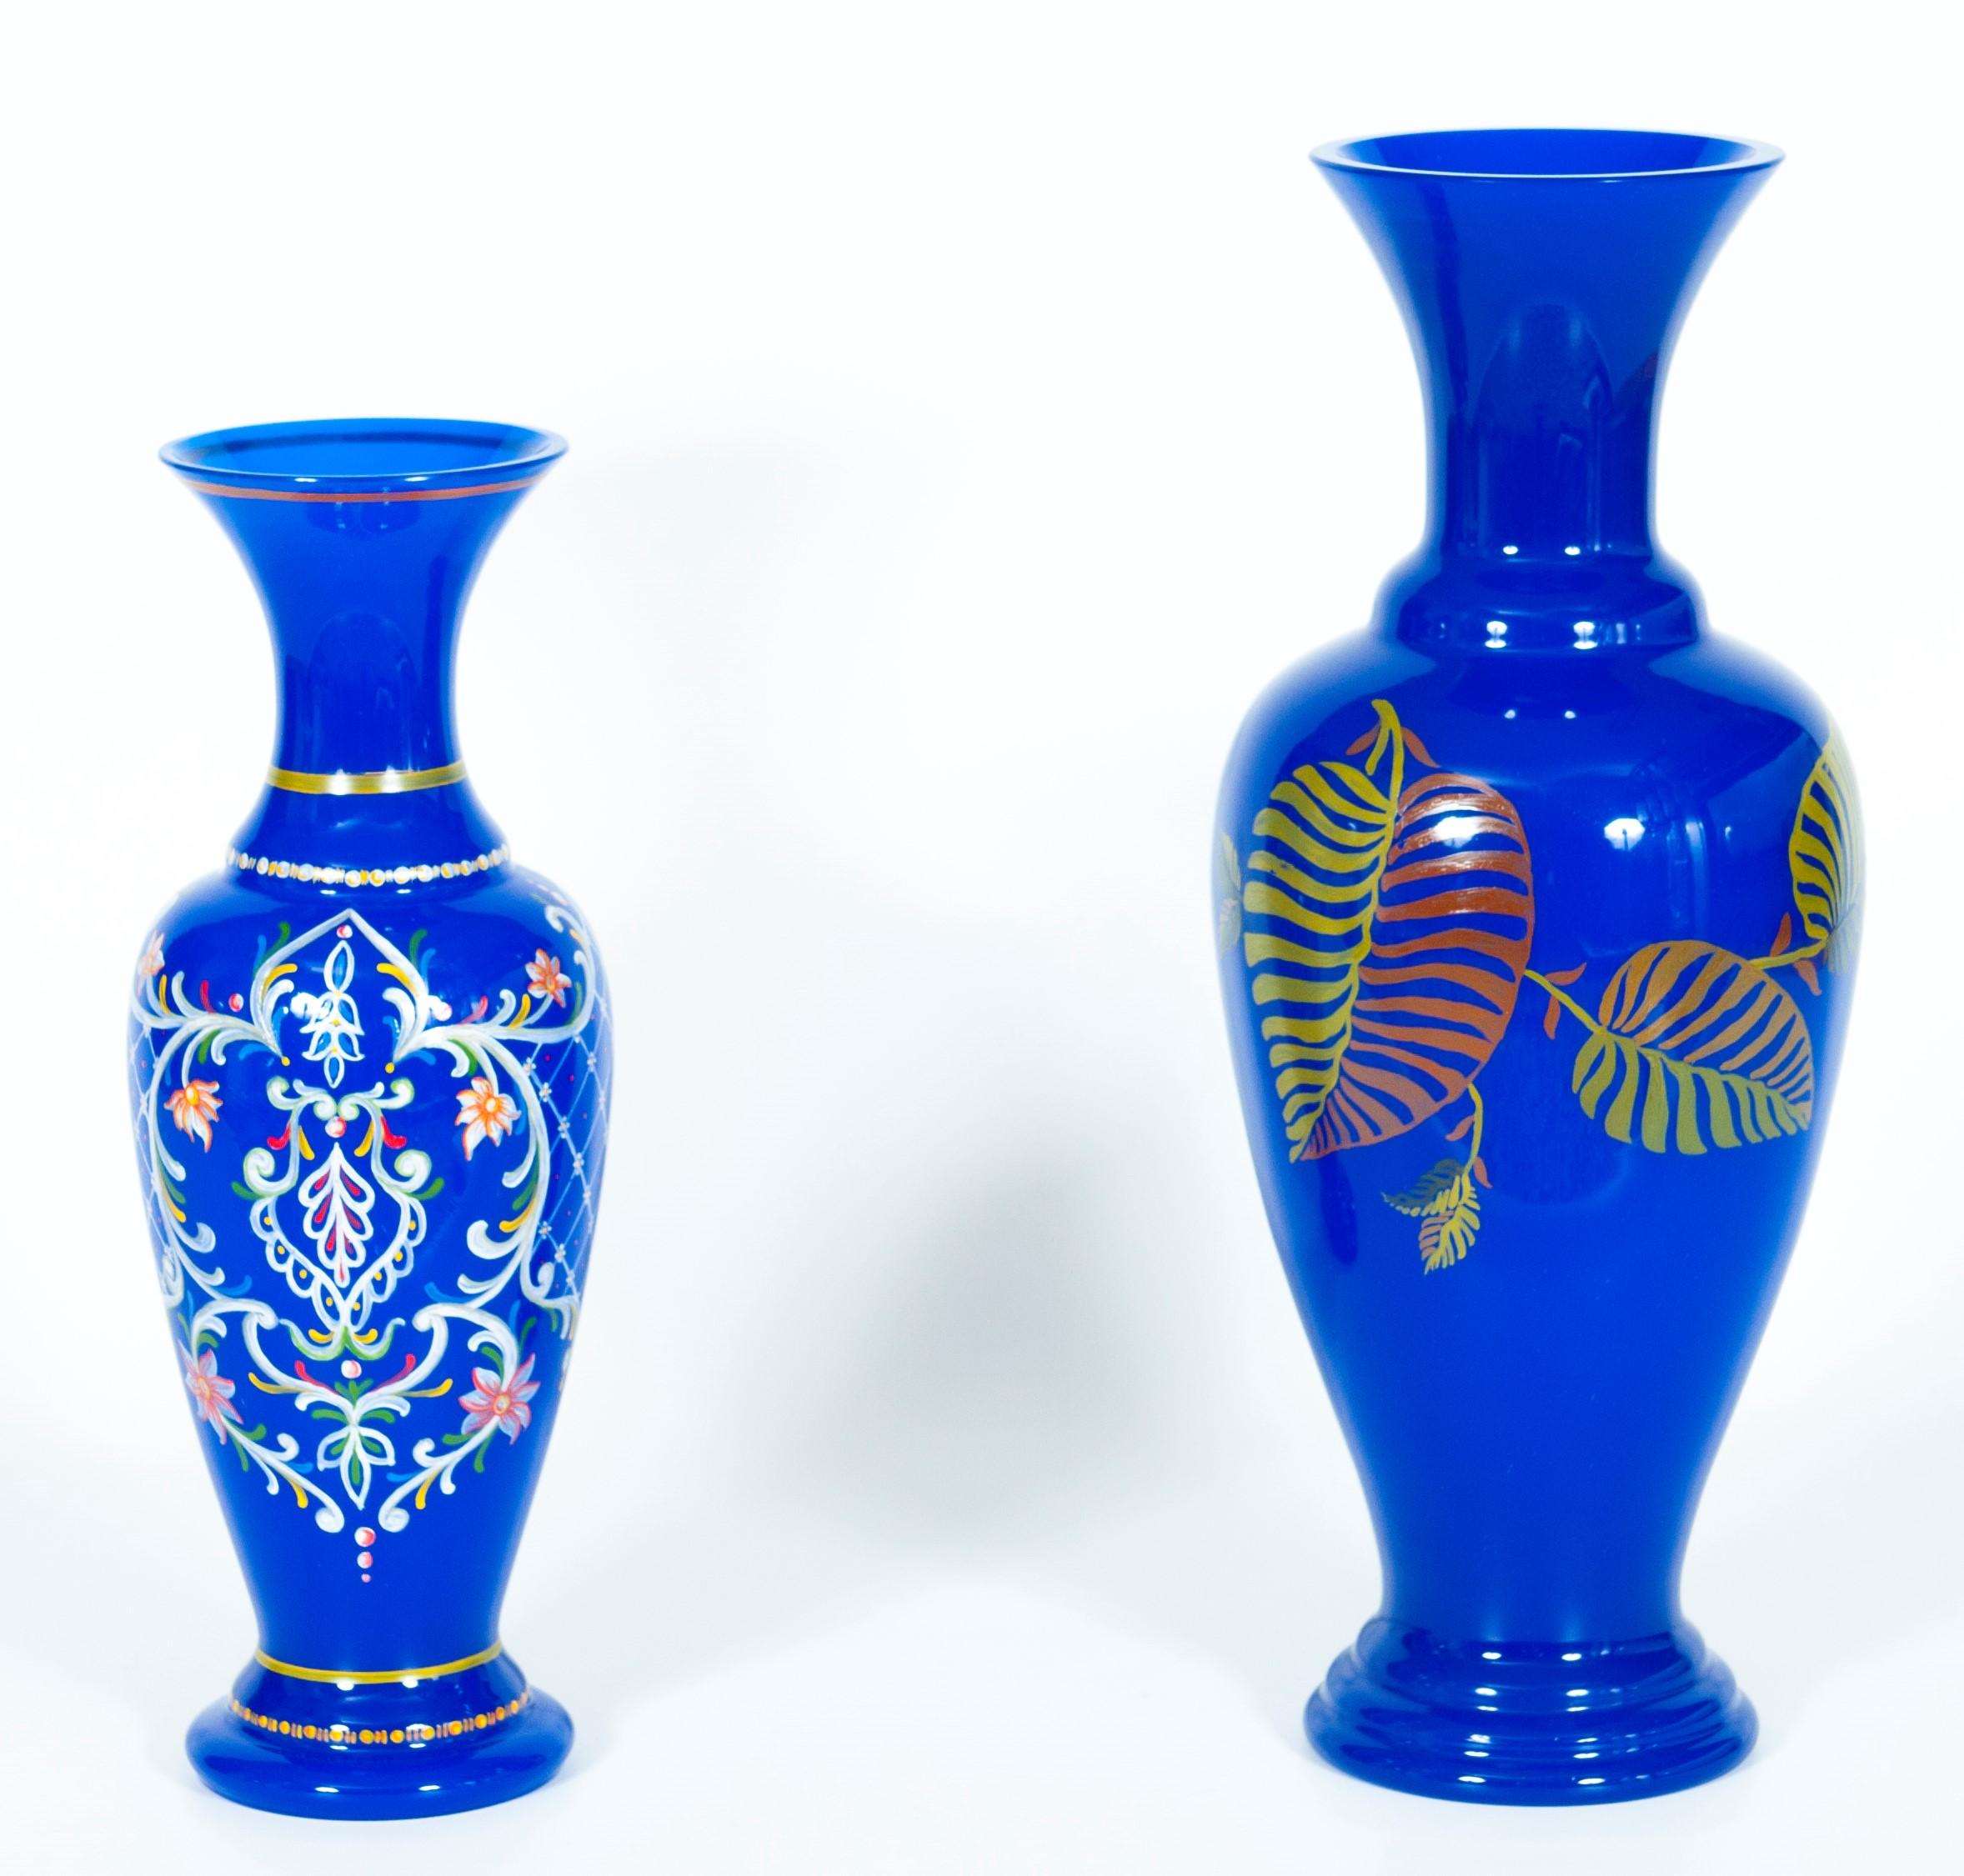 Paire de vases en verre bleu de Murano avec peinture d'art, Giovanni Dalla Fina, années 1980, Italie.
Cette étonnante paire de vases italiens volera la vedette grâce à sa couleur bleue intense, ses formes raffinées, ses détails de grande qualité et